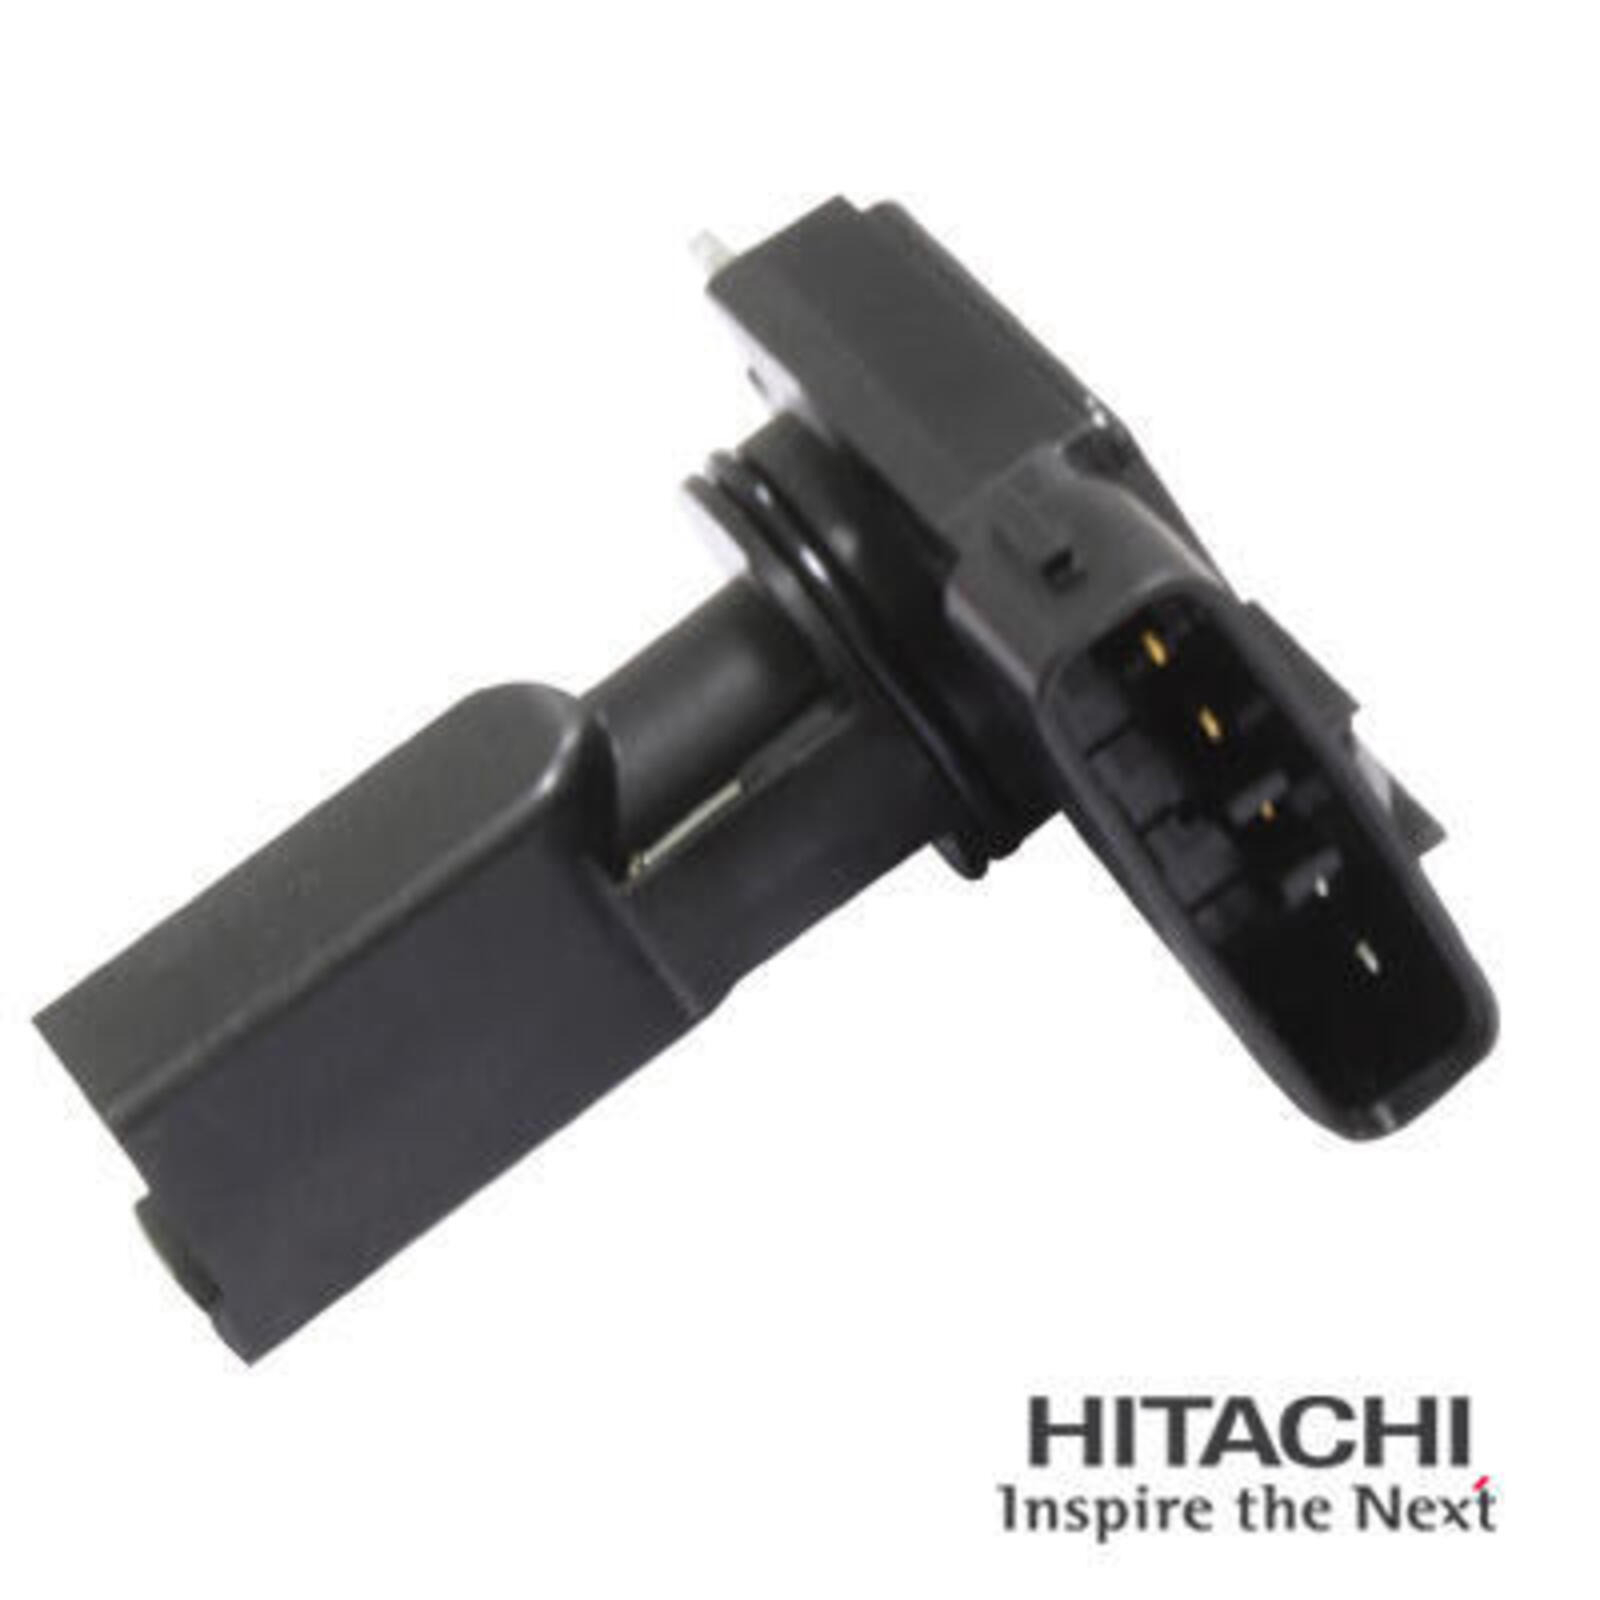 HITACHI Air Mass Sensor Original Spare Part